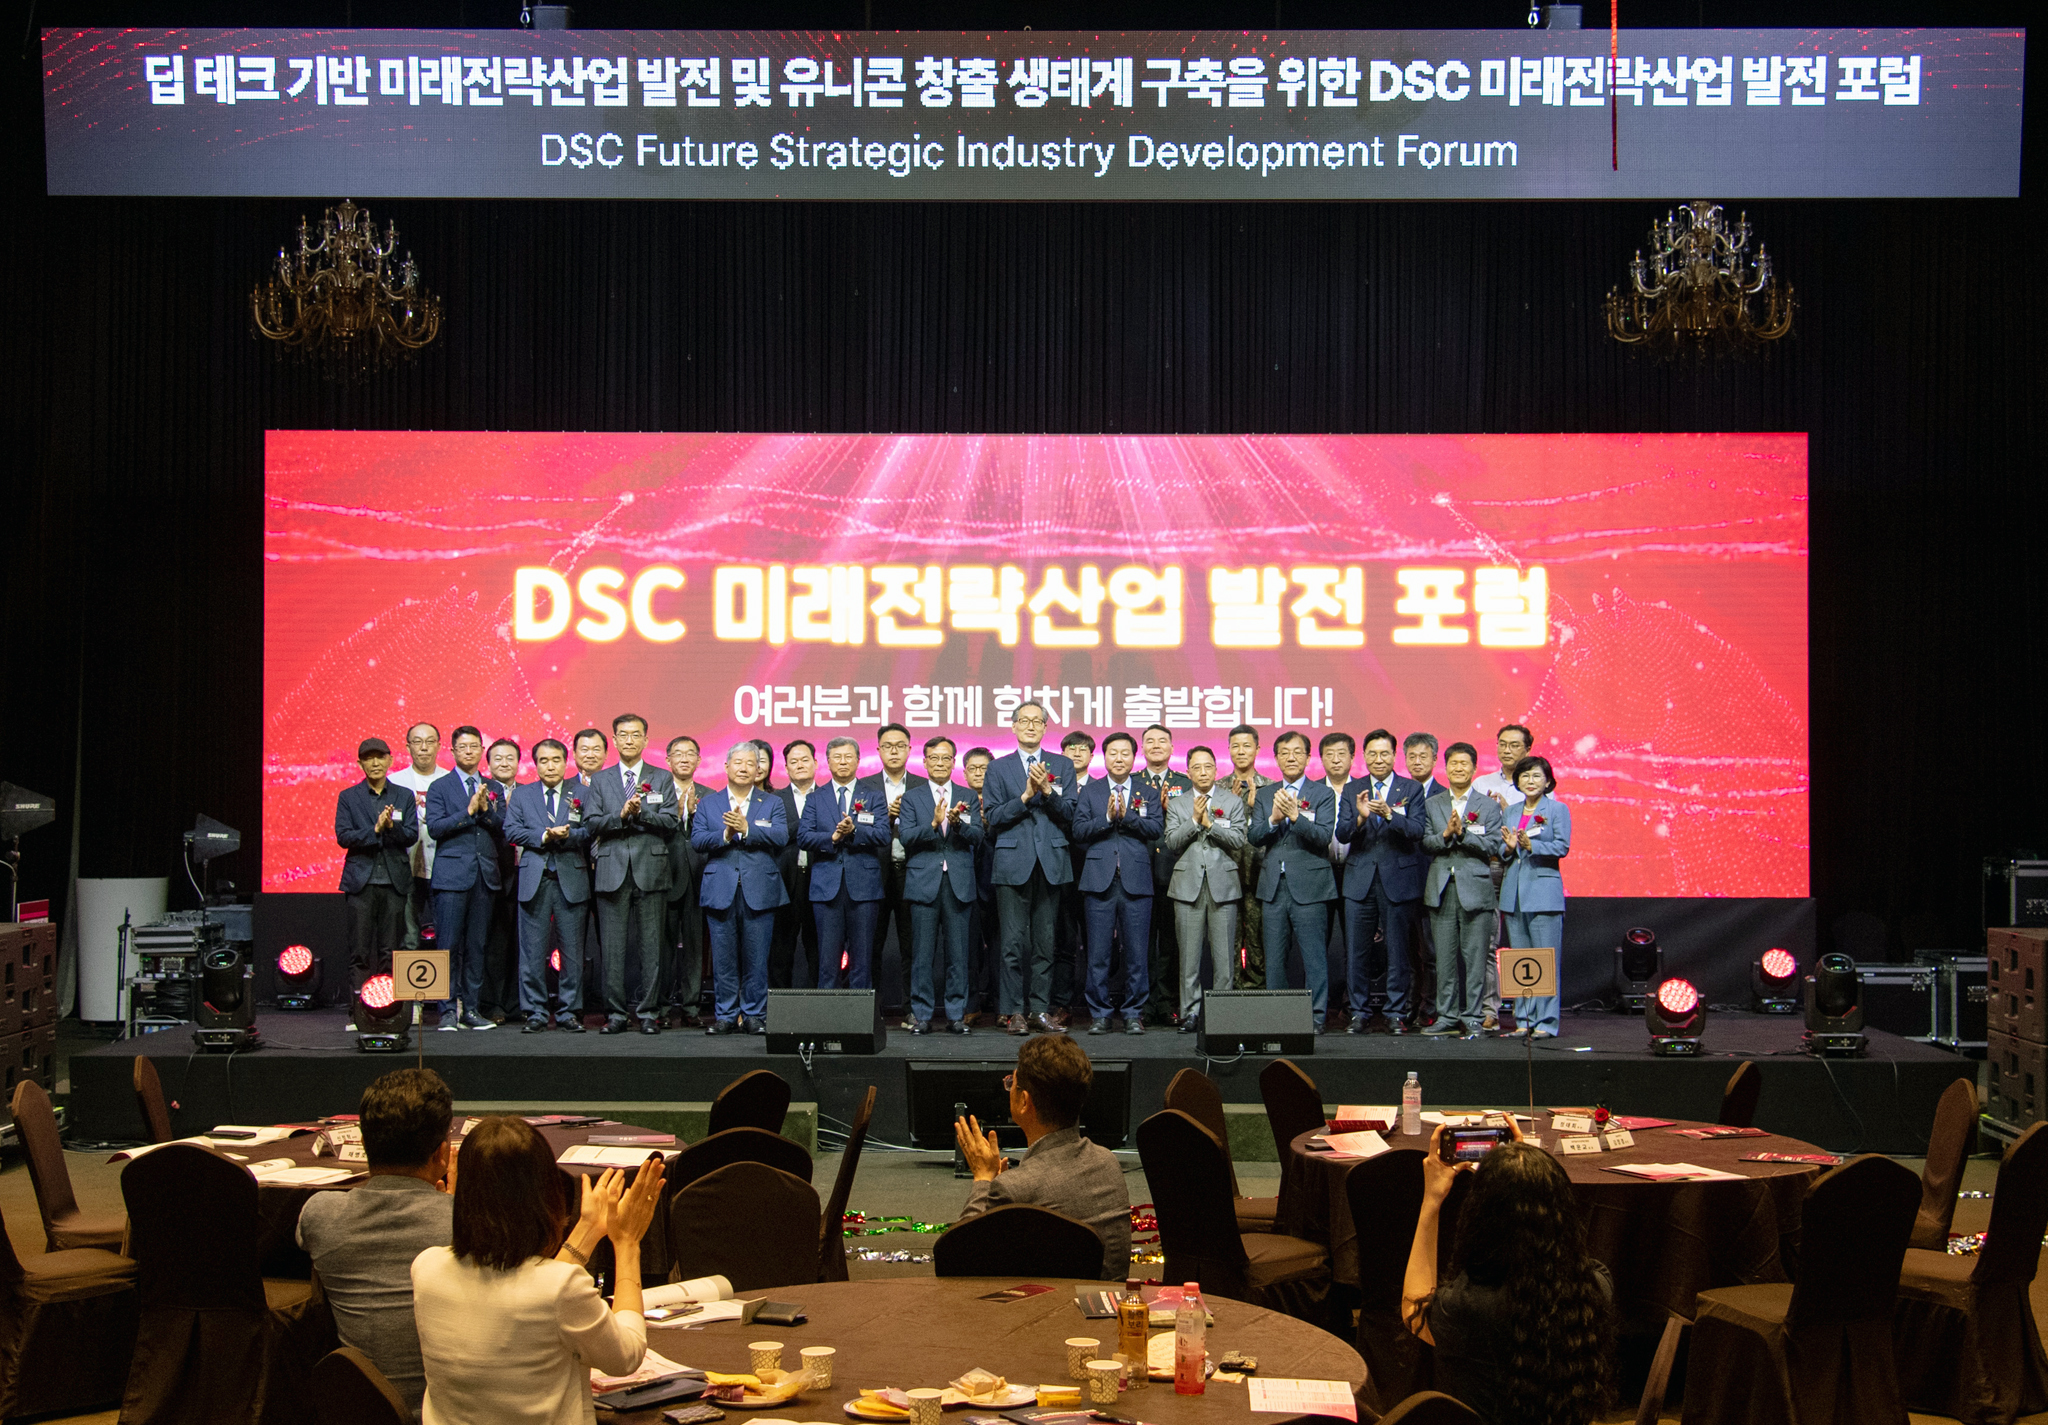 DSC 지역혁신플랫폼, 제1회 미래전략산업 발전포럼 개최 사진